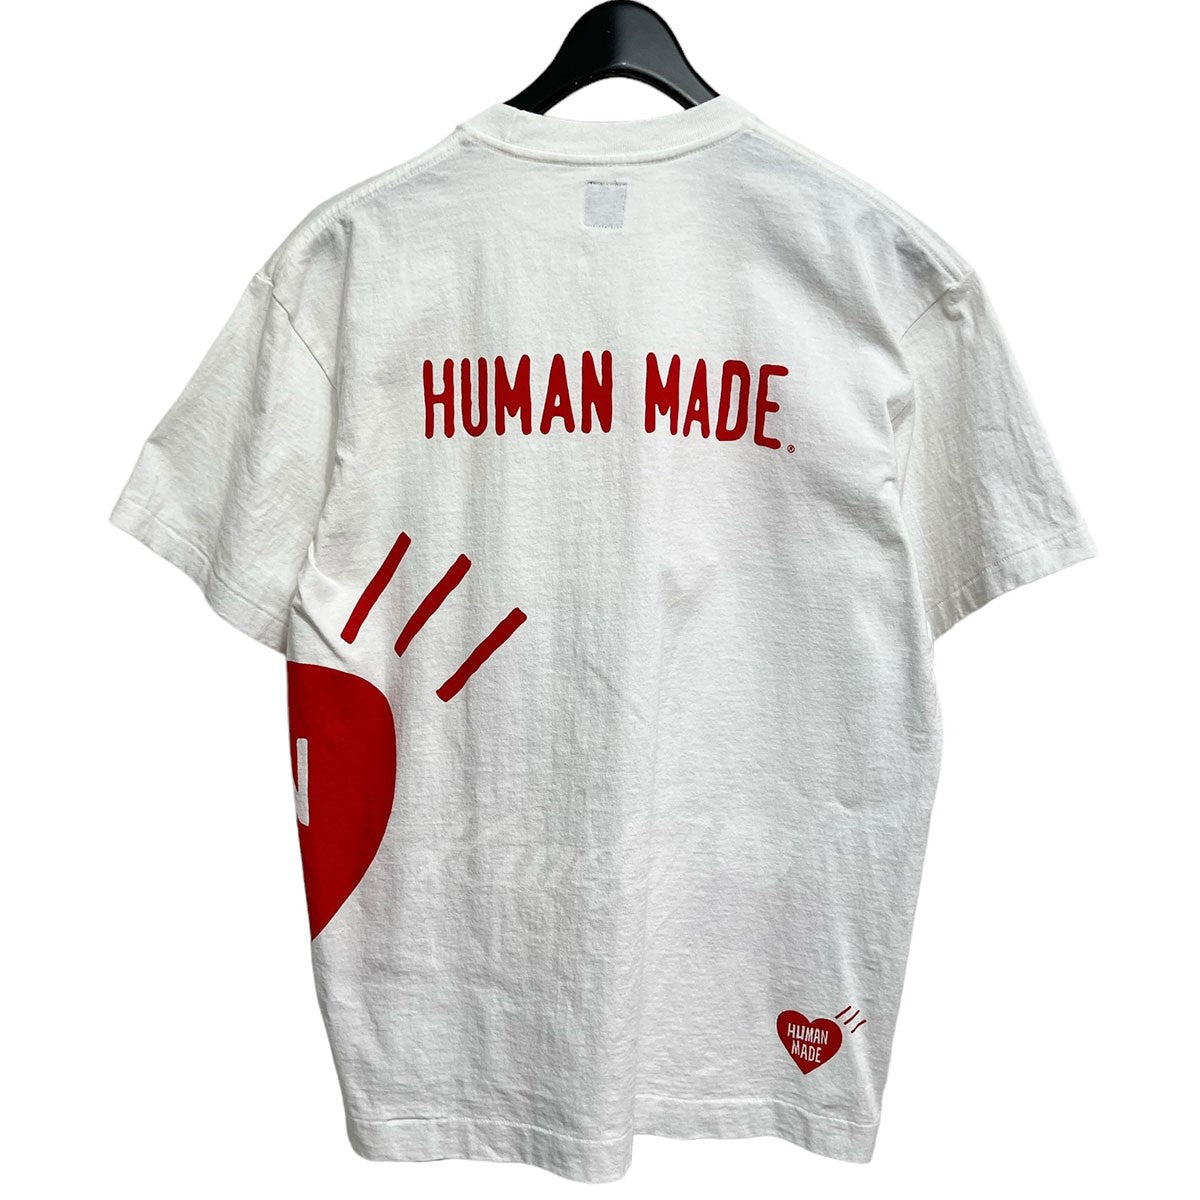 HUMAN MADE(ヒューマンメイド) BIG HEART T-SHIRT ホワイト サイズ M 